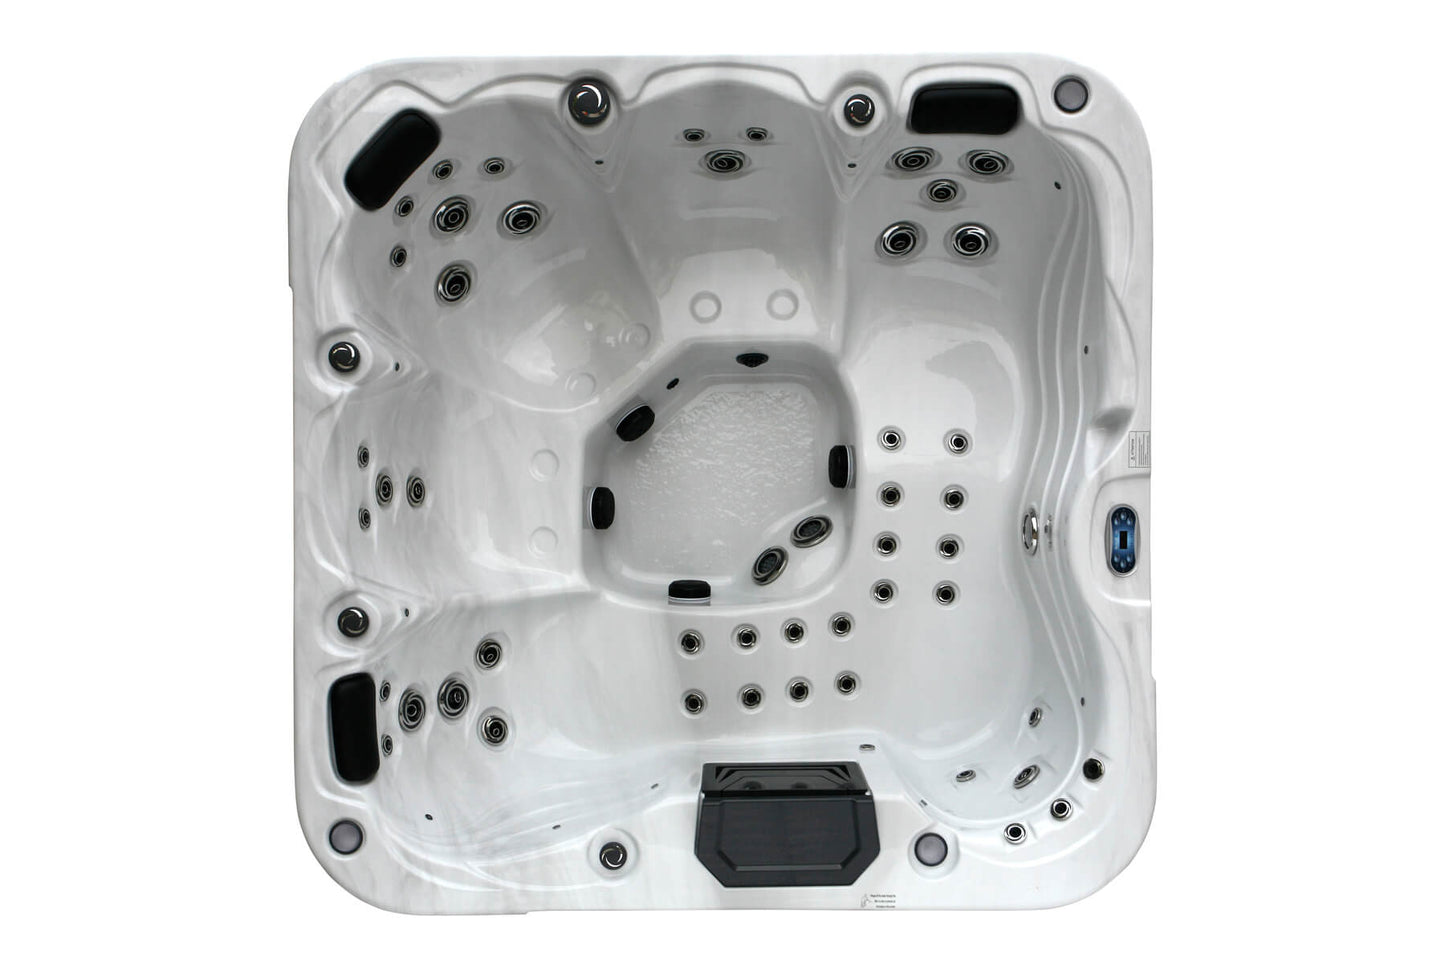 4500 Series 32A (Twin Pump) hot tub by H2O